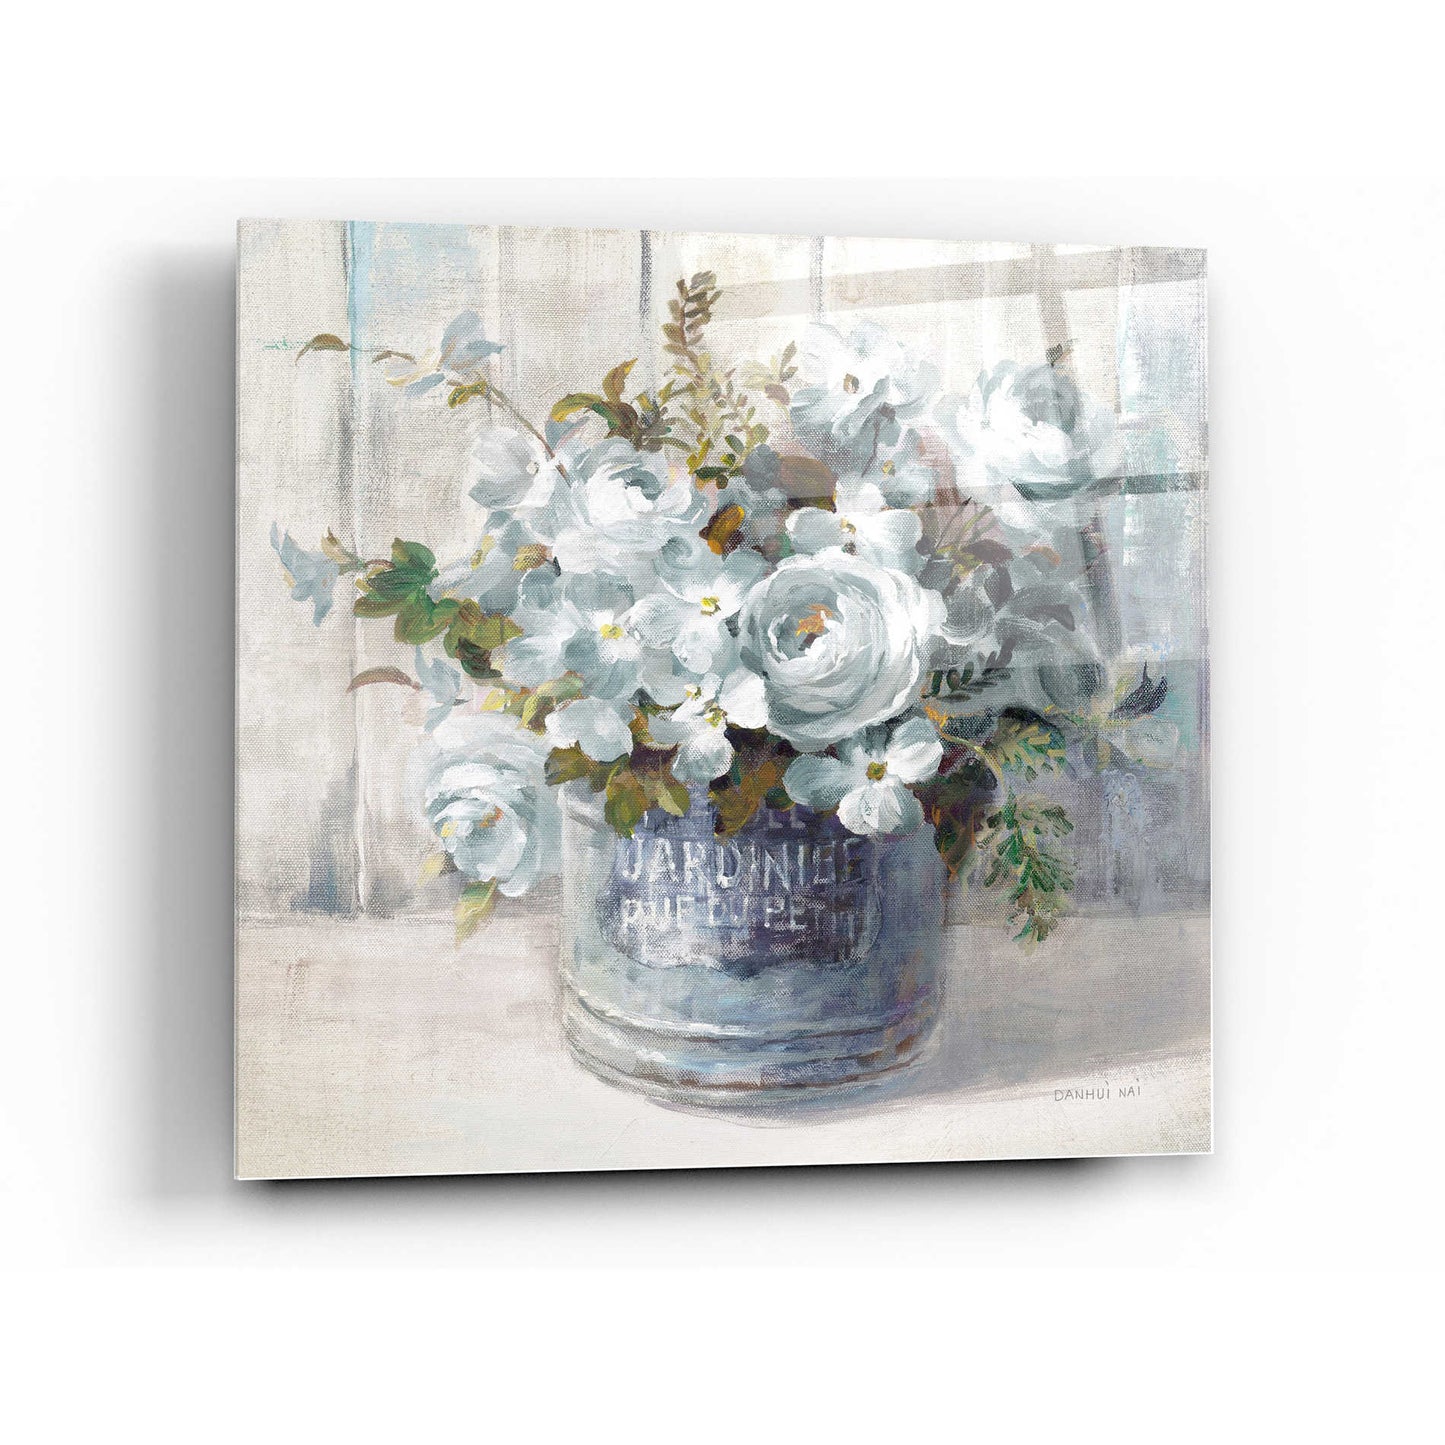 Epic Art 'Garden Blooms I Blue Crop' by Danhui Nai, Acrylic Glass Wall Art,24x24